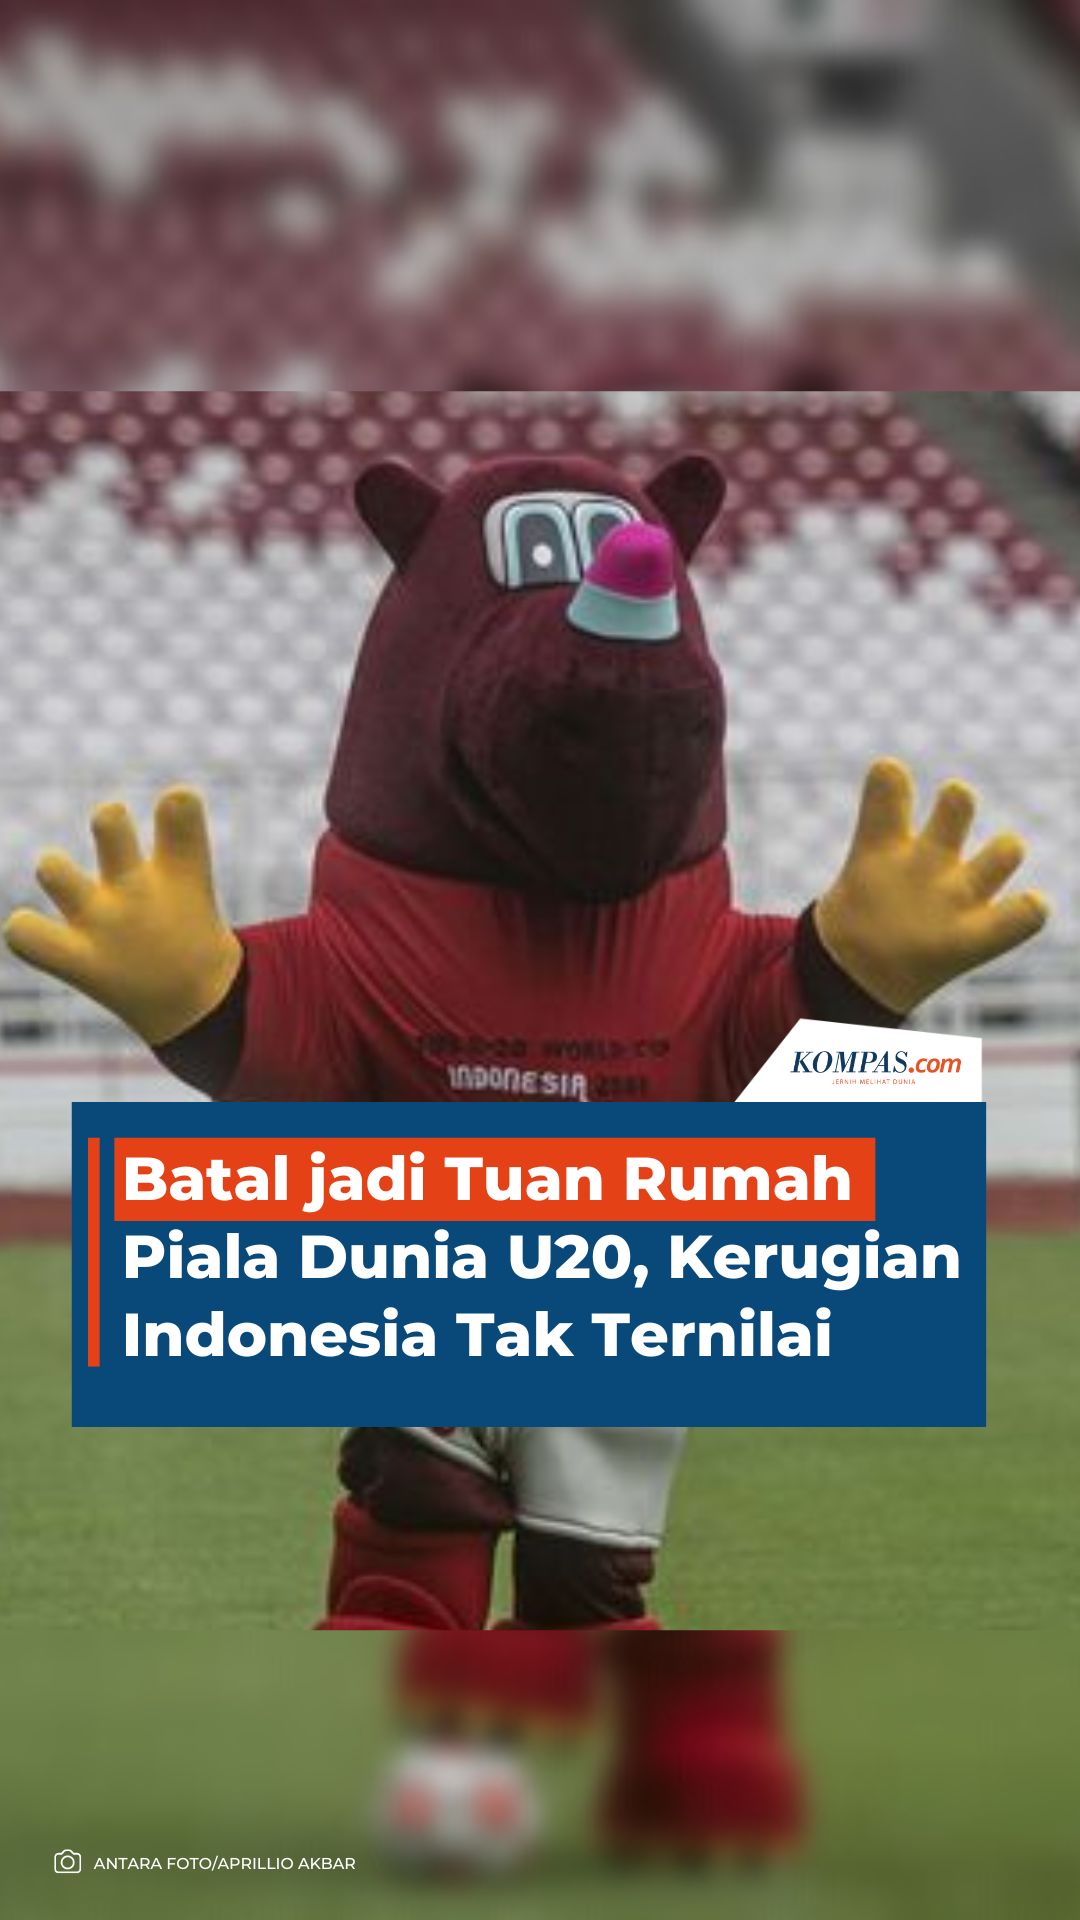 Batal jadi Tuan Rumah Piala Dunia U20, Kerugian Indonesia Tak Ternilai